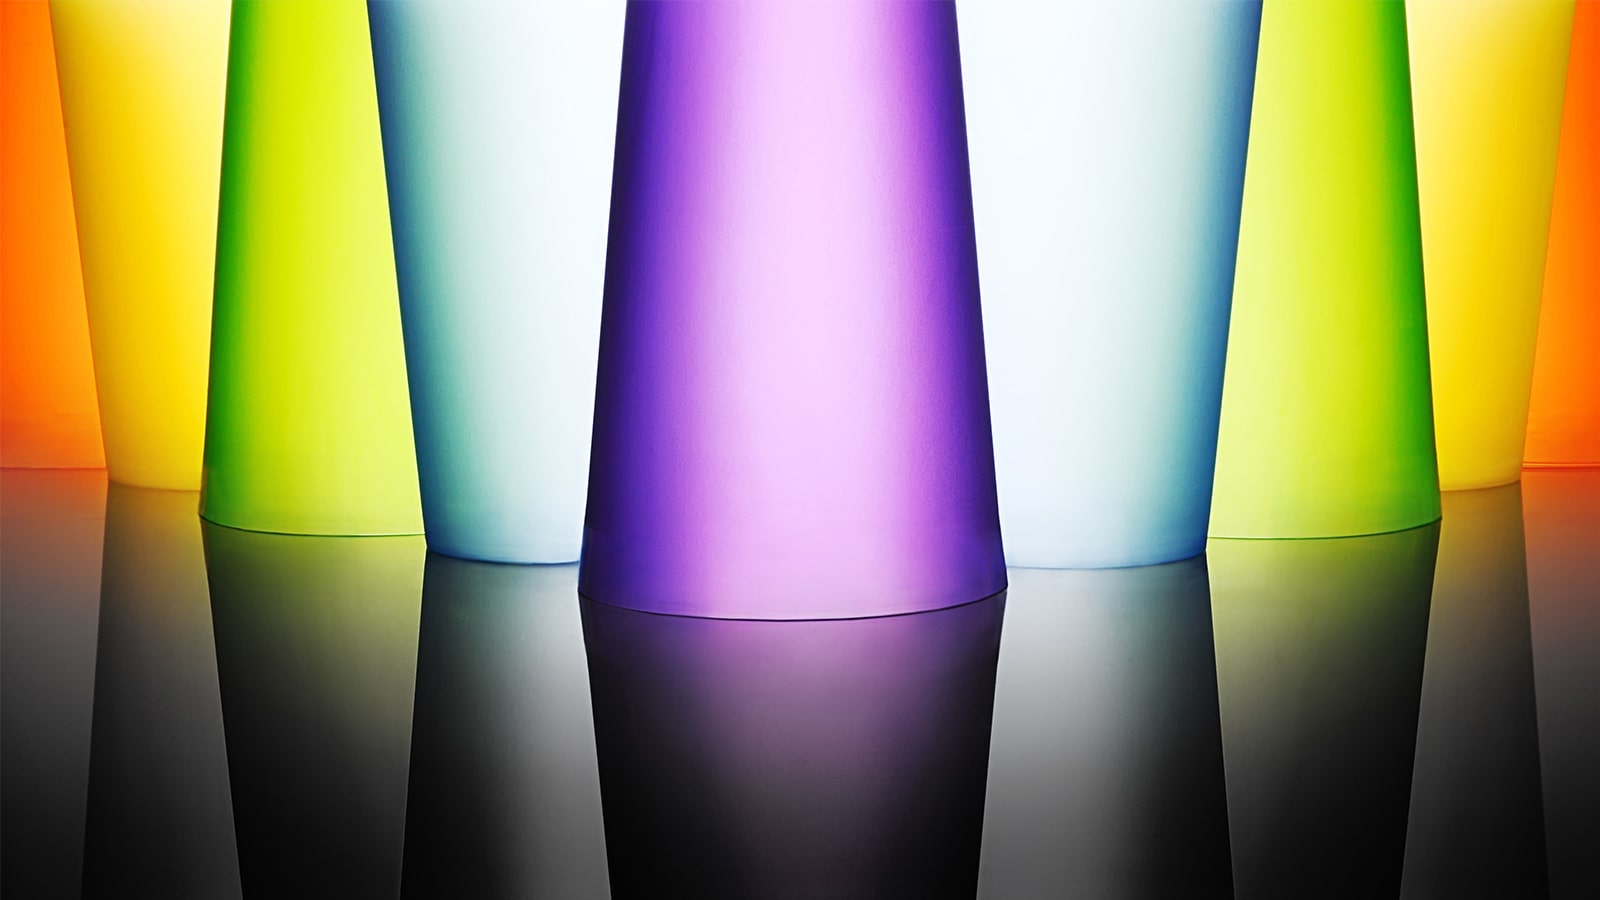 Prikaz svetlih i živopisnih staklenih čaša.